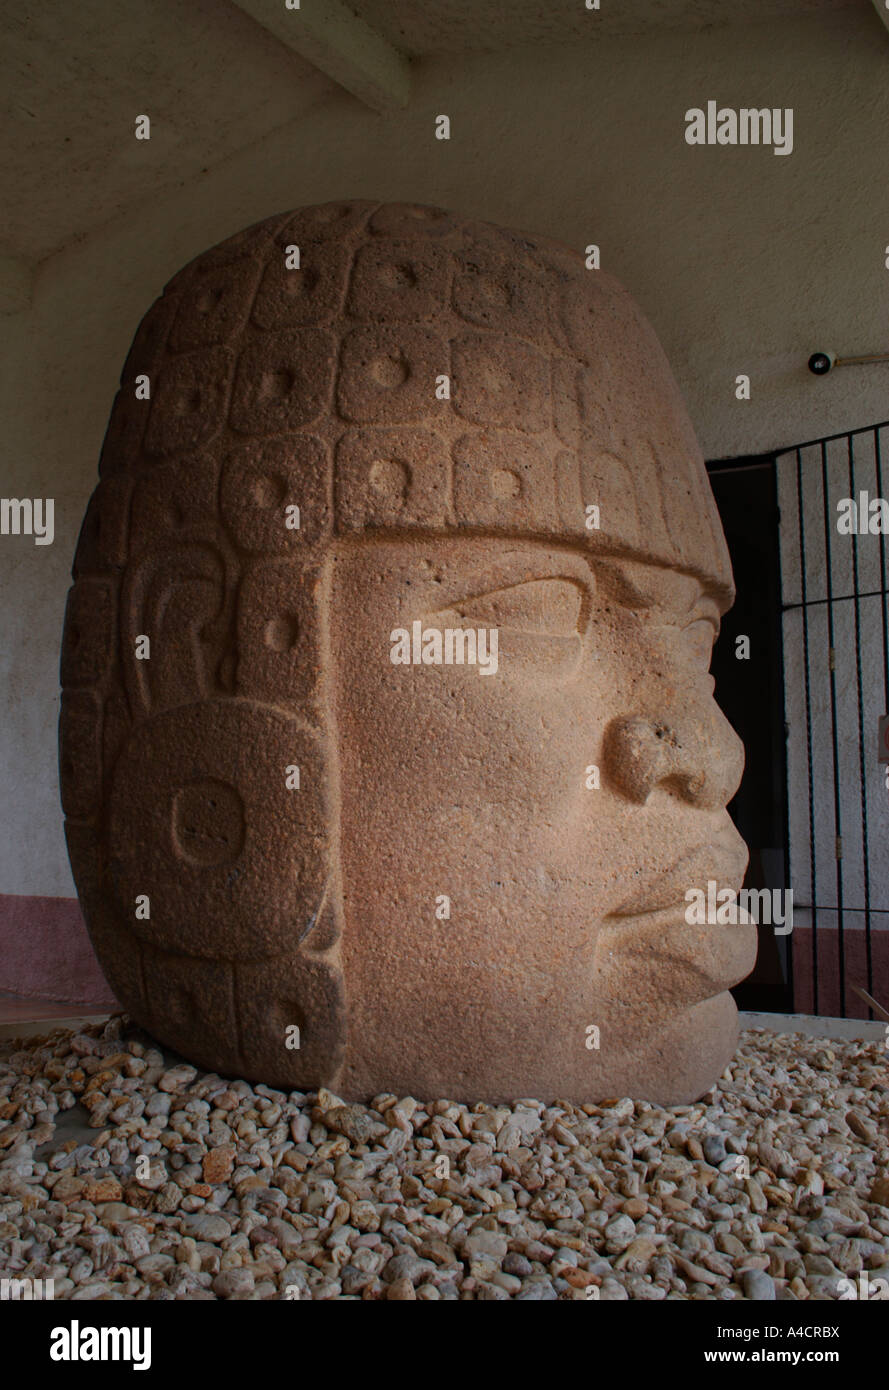 Sculpture de basalte, chef numéro 10, musée à San Lorenzo Veracruz, Mexique, 1200 avant J.-C. à 900 av. J.-C. culture olmèque, l'Etat de Veracruz. Banque D'Images